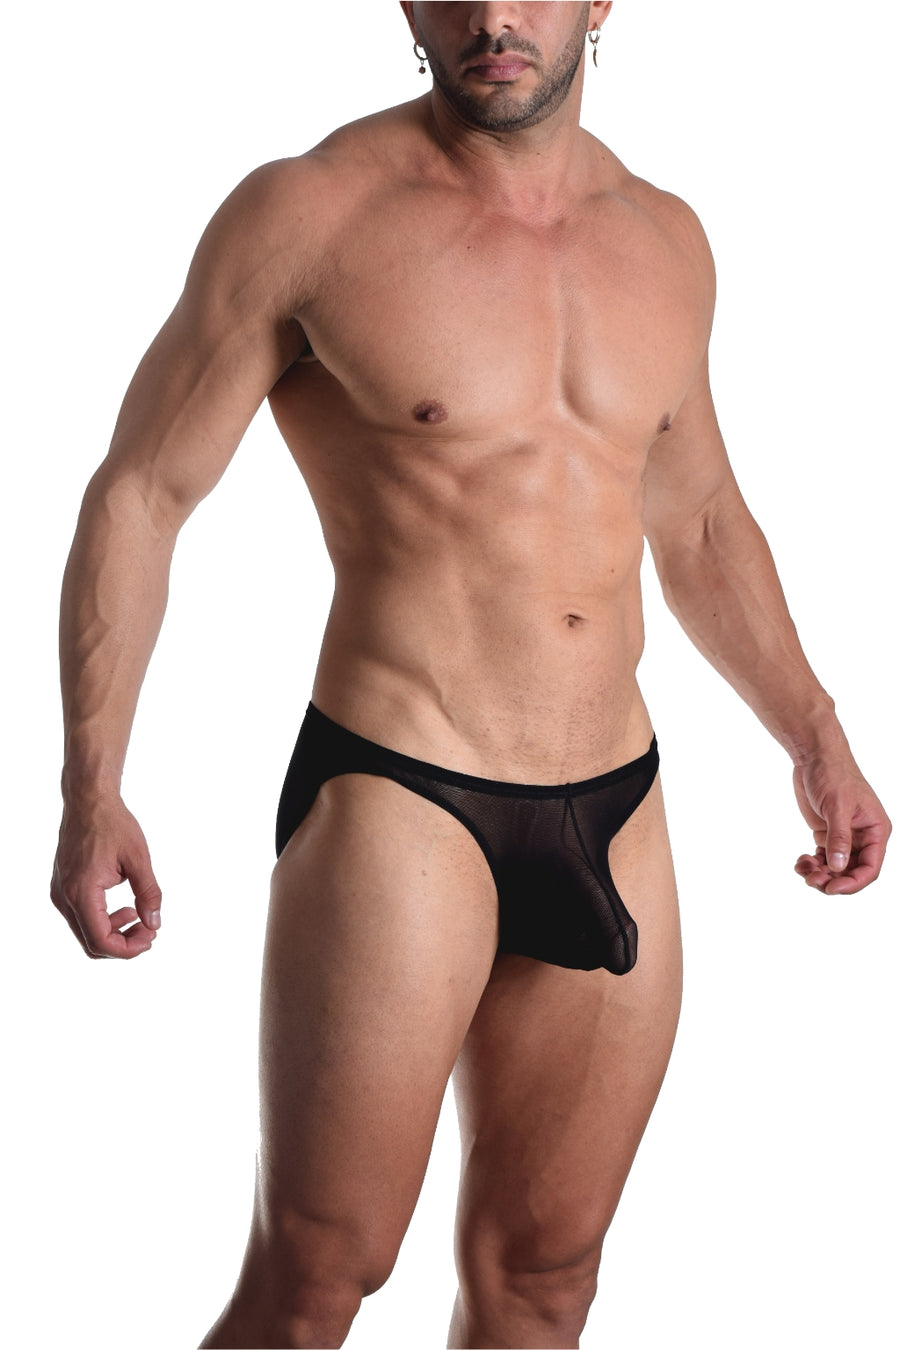 BfM Mens Sheer Net Bikini Pouch Underwear